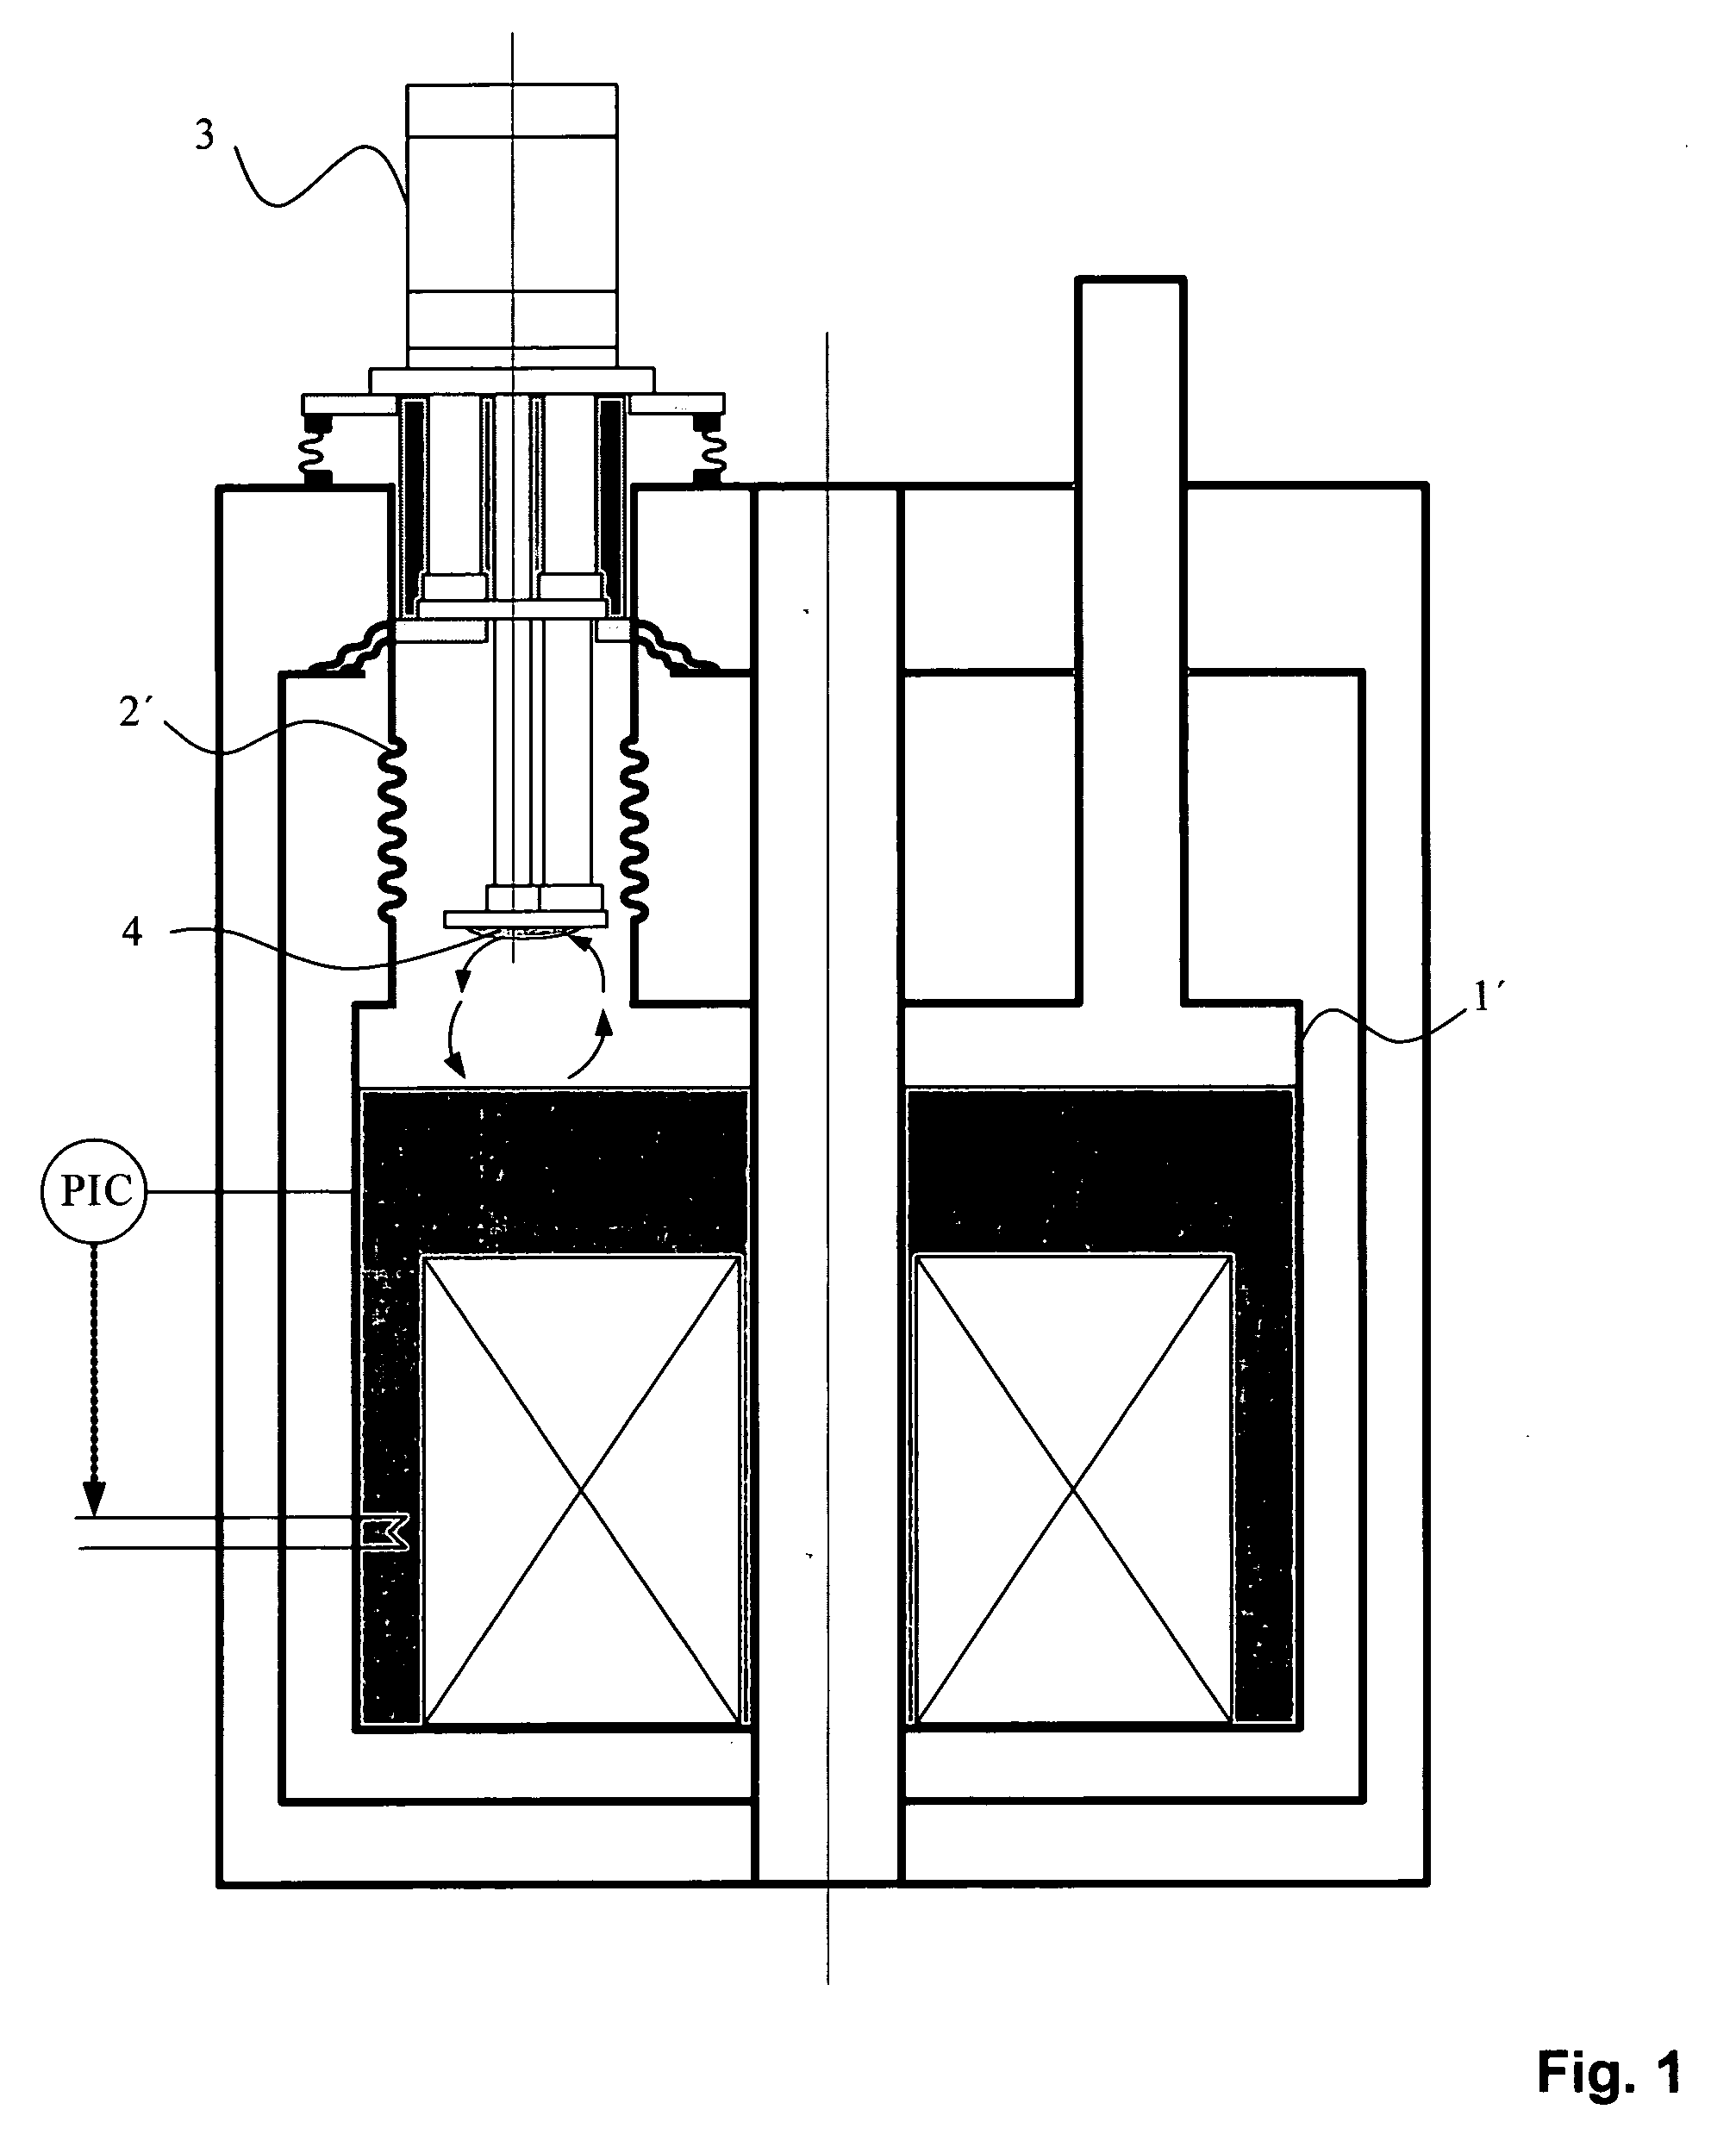 Cryostat configuration with cryocooler